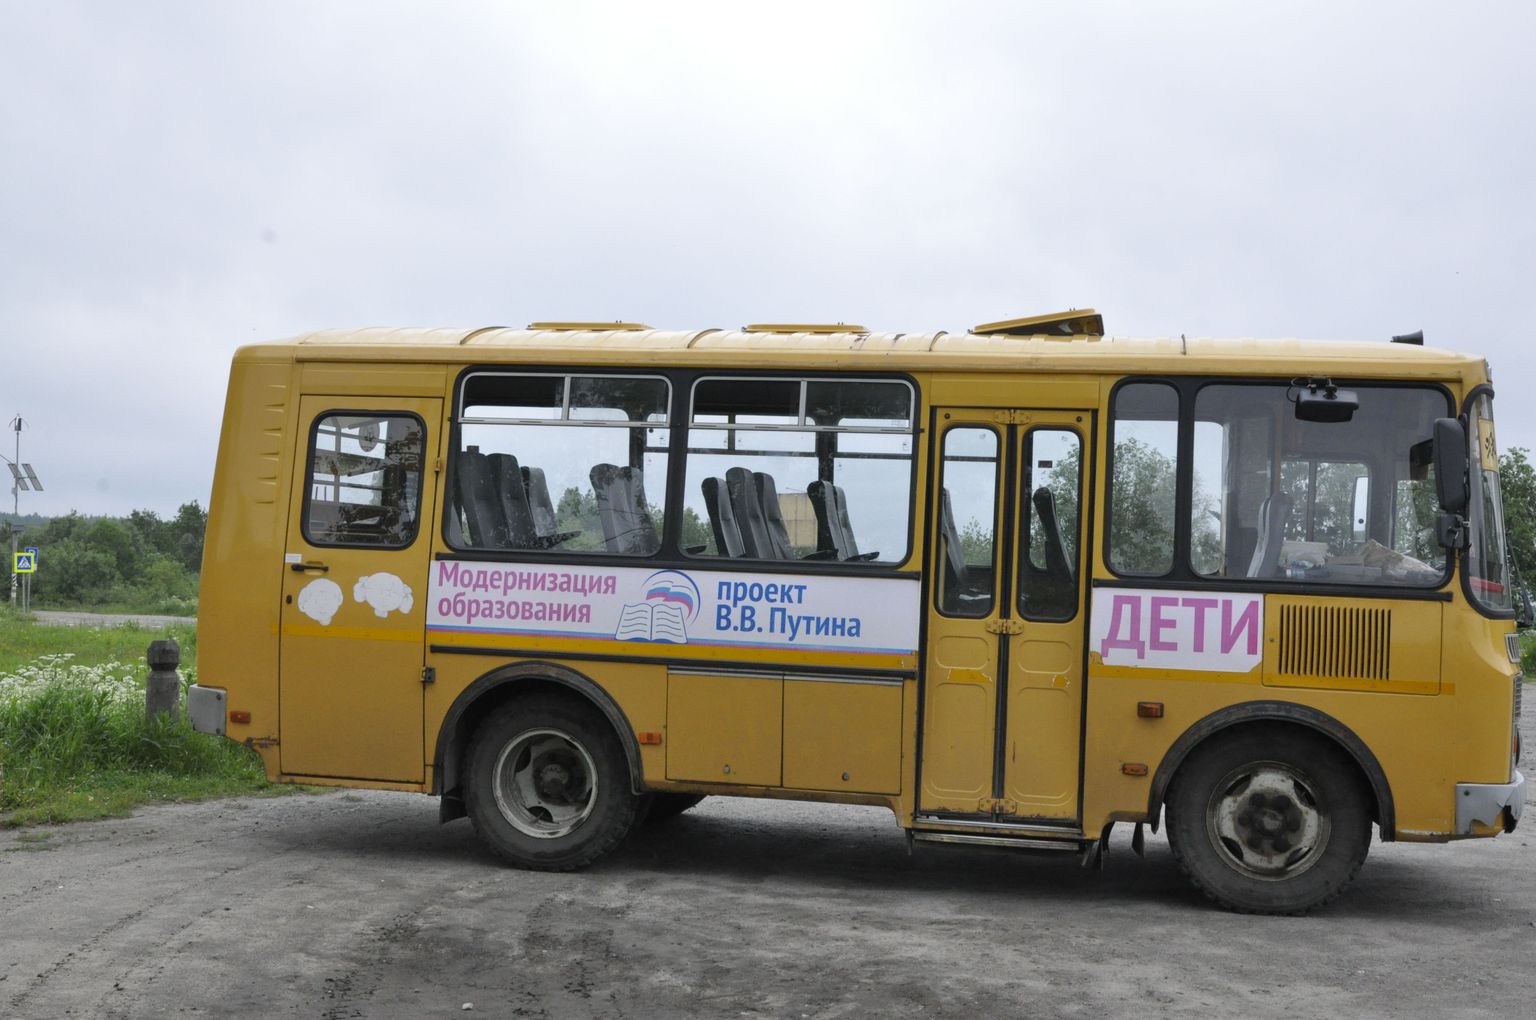 Hariduse moderniseerimine ei kukkunud Kremlil eriti hästi välja. Plakatid Arhangelski koolibussidel on vägevad, aga bussid ise mitte just väga modernsed. Nüüd peab Kreml välja mõtlema, kuidas moderniseerida majandust. Hiljutise küsitluse järgi on haridus ja majandus koos tervishoiuga need valdkonnad, mis venemaalastel tekitab kõige vähem uhkust oma kodumaal.